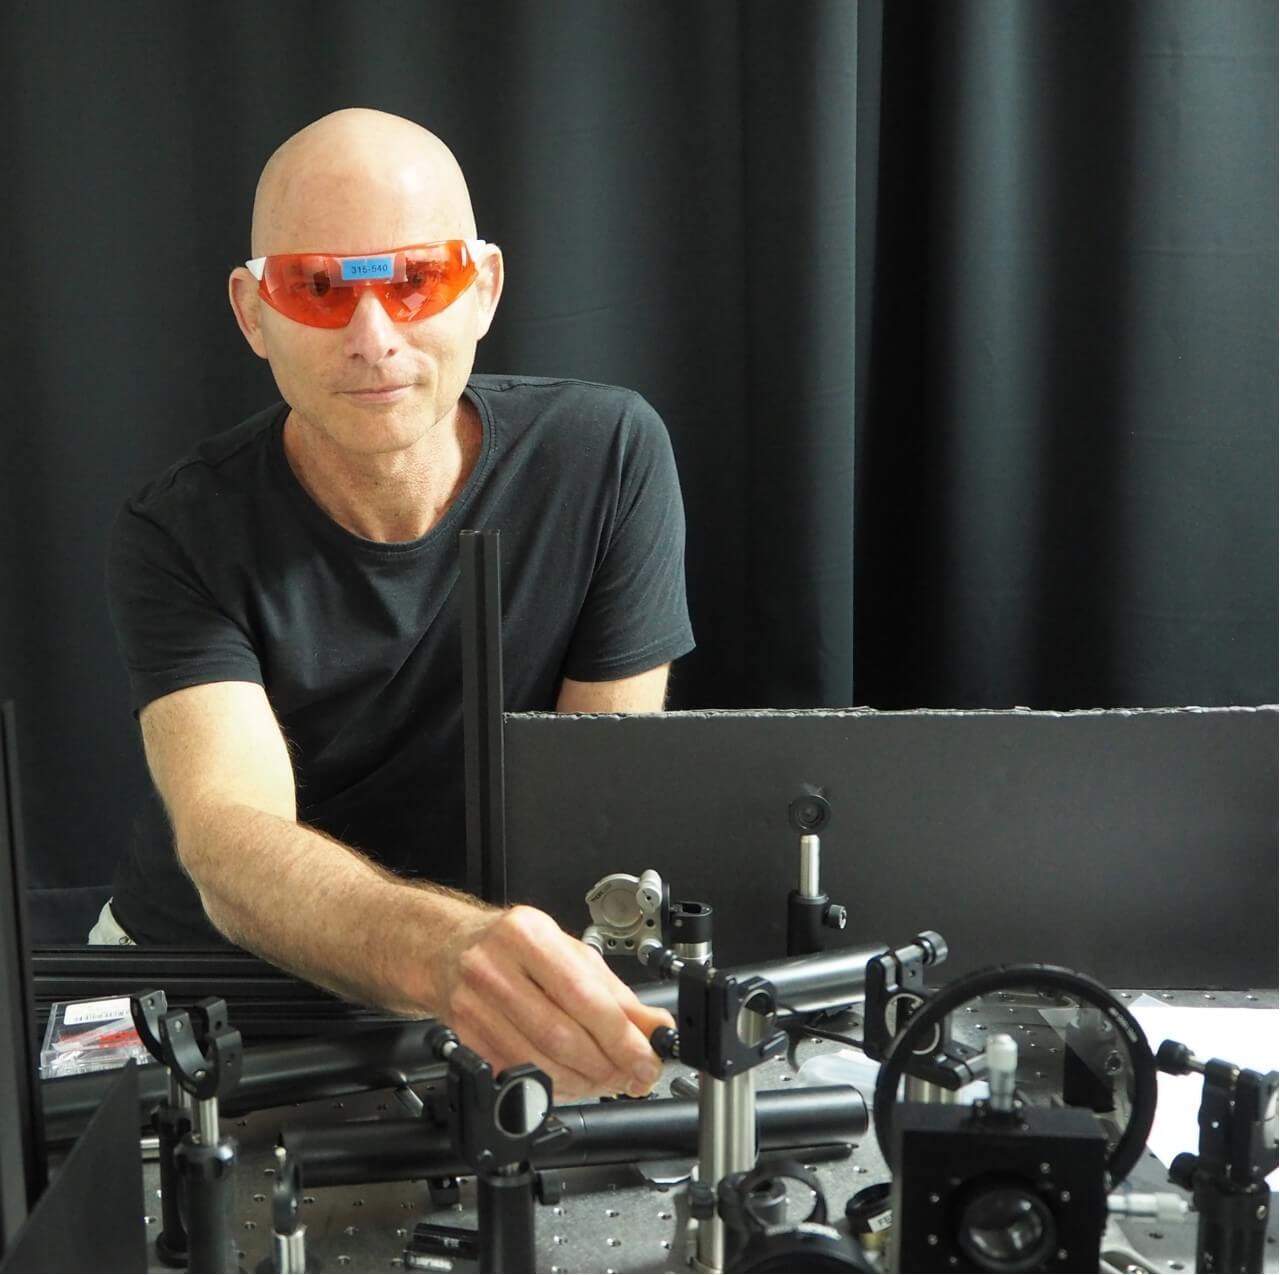 البروفيسور غاي بارتيل - رئيس مختبر الأبحاث الضوئية المتقدمة في كلية فيتربي للهندسة الكهربائية وهندسة الحاسوب تصوير: المتحدث باسم التخنيون